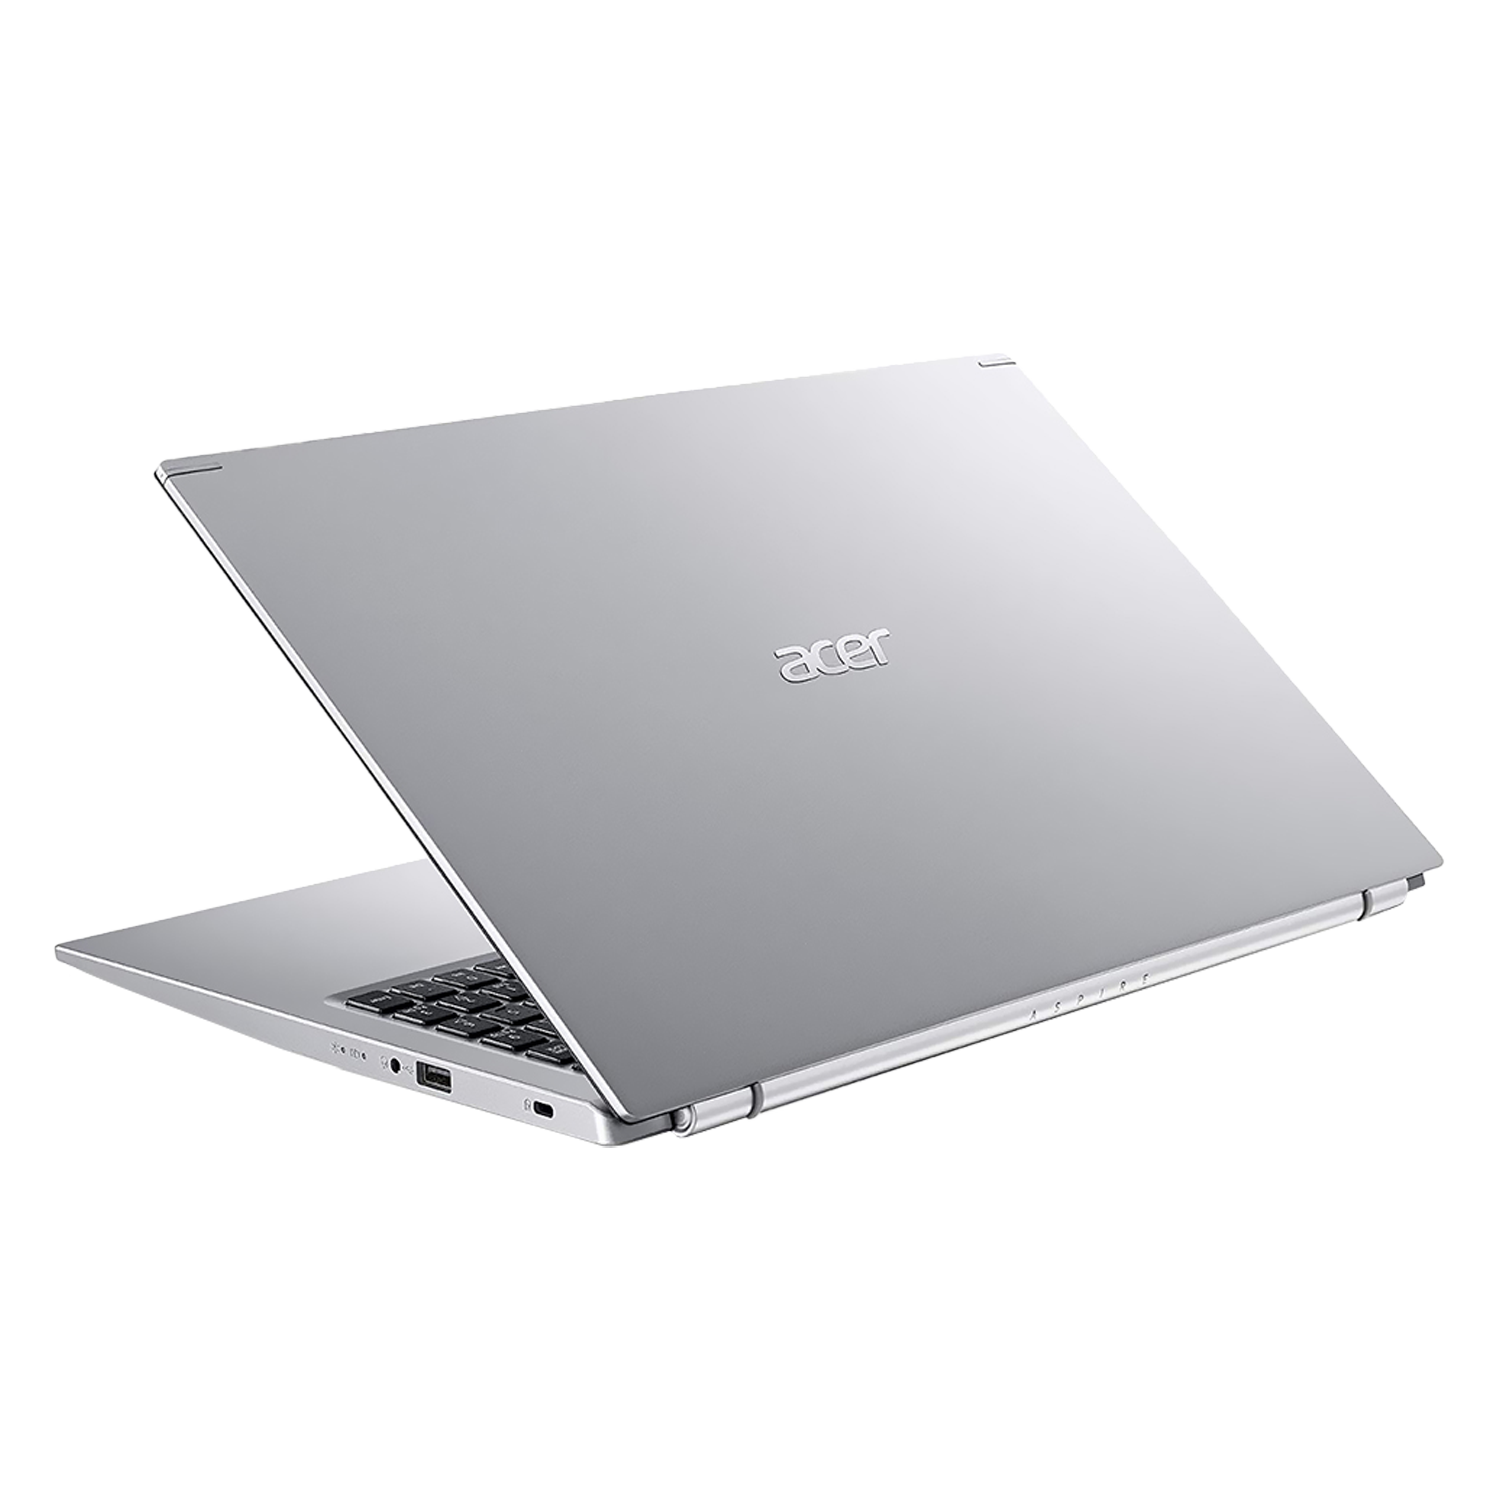 Notebook Acer Aspire 5 A515-45-R5B9 AMD Ryzen 5 5500U de 2.1GHz / 8GB de RAM / 512GB SSD / Tela Full HD 15.6" / Windows 11 - Prata
